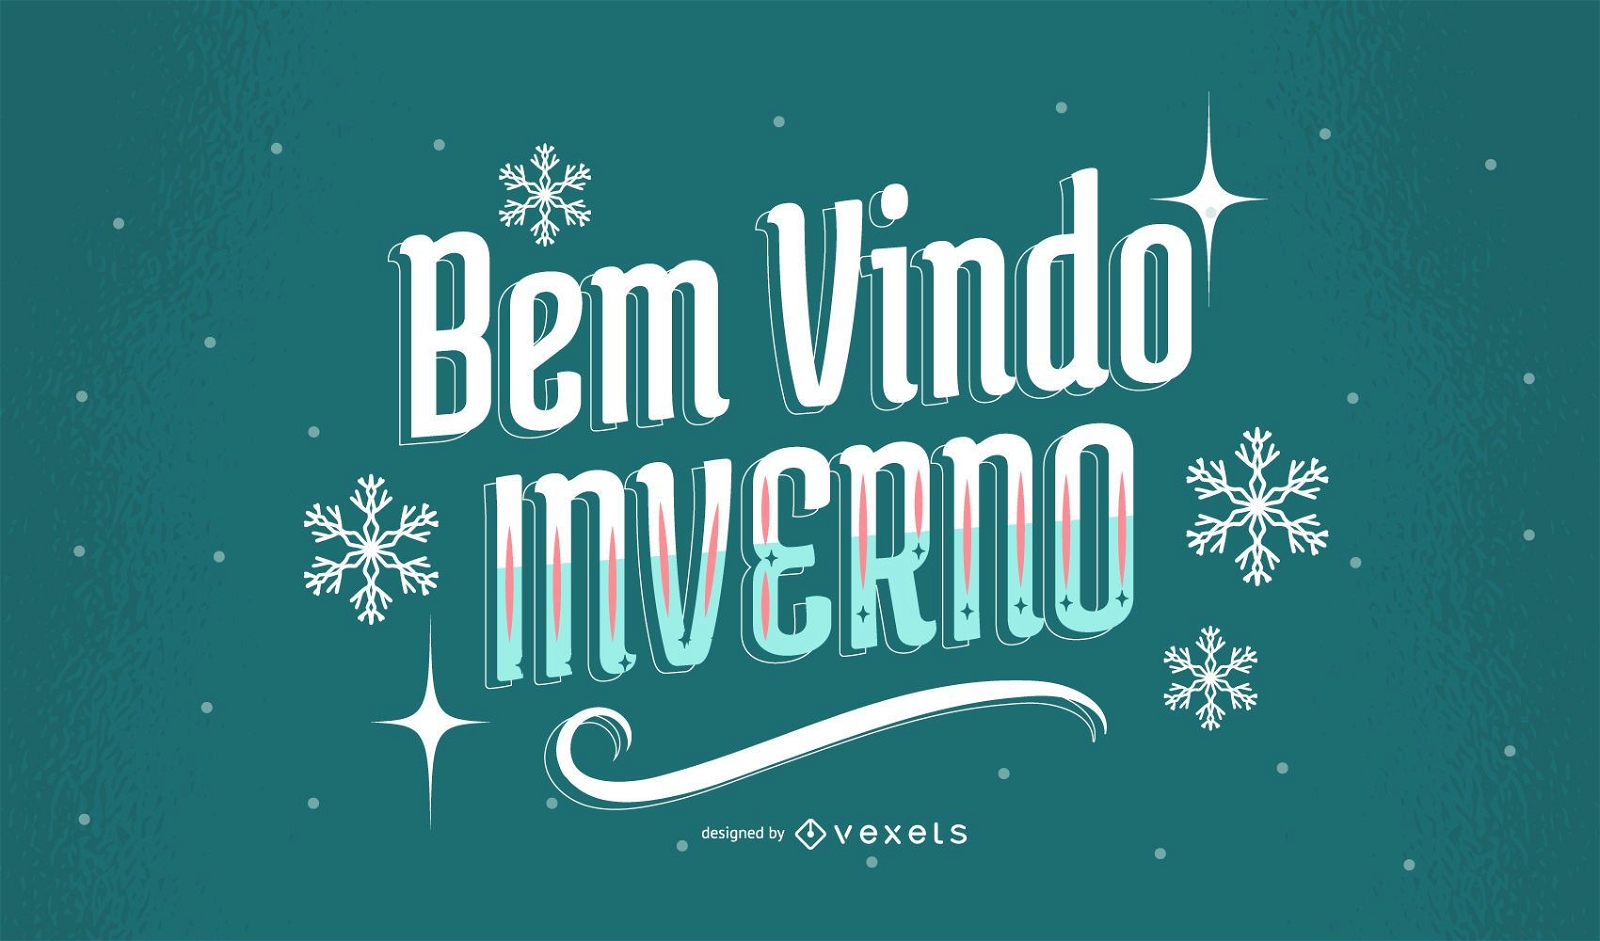 Portuguese Winter Quote Design